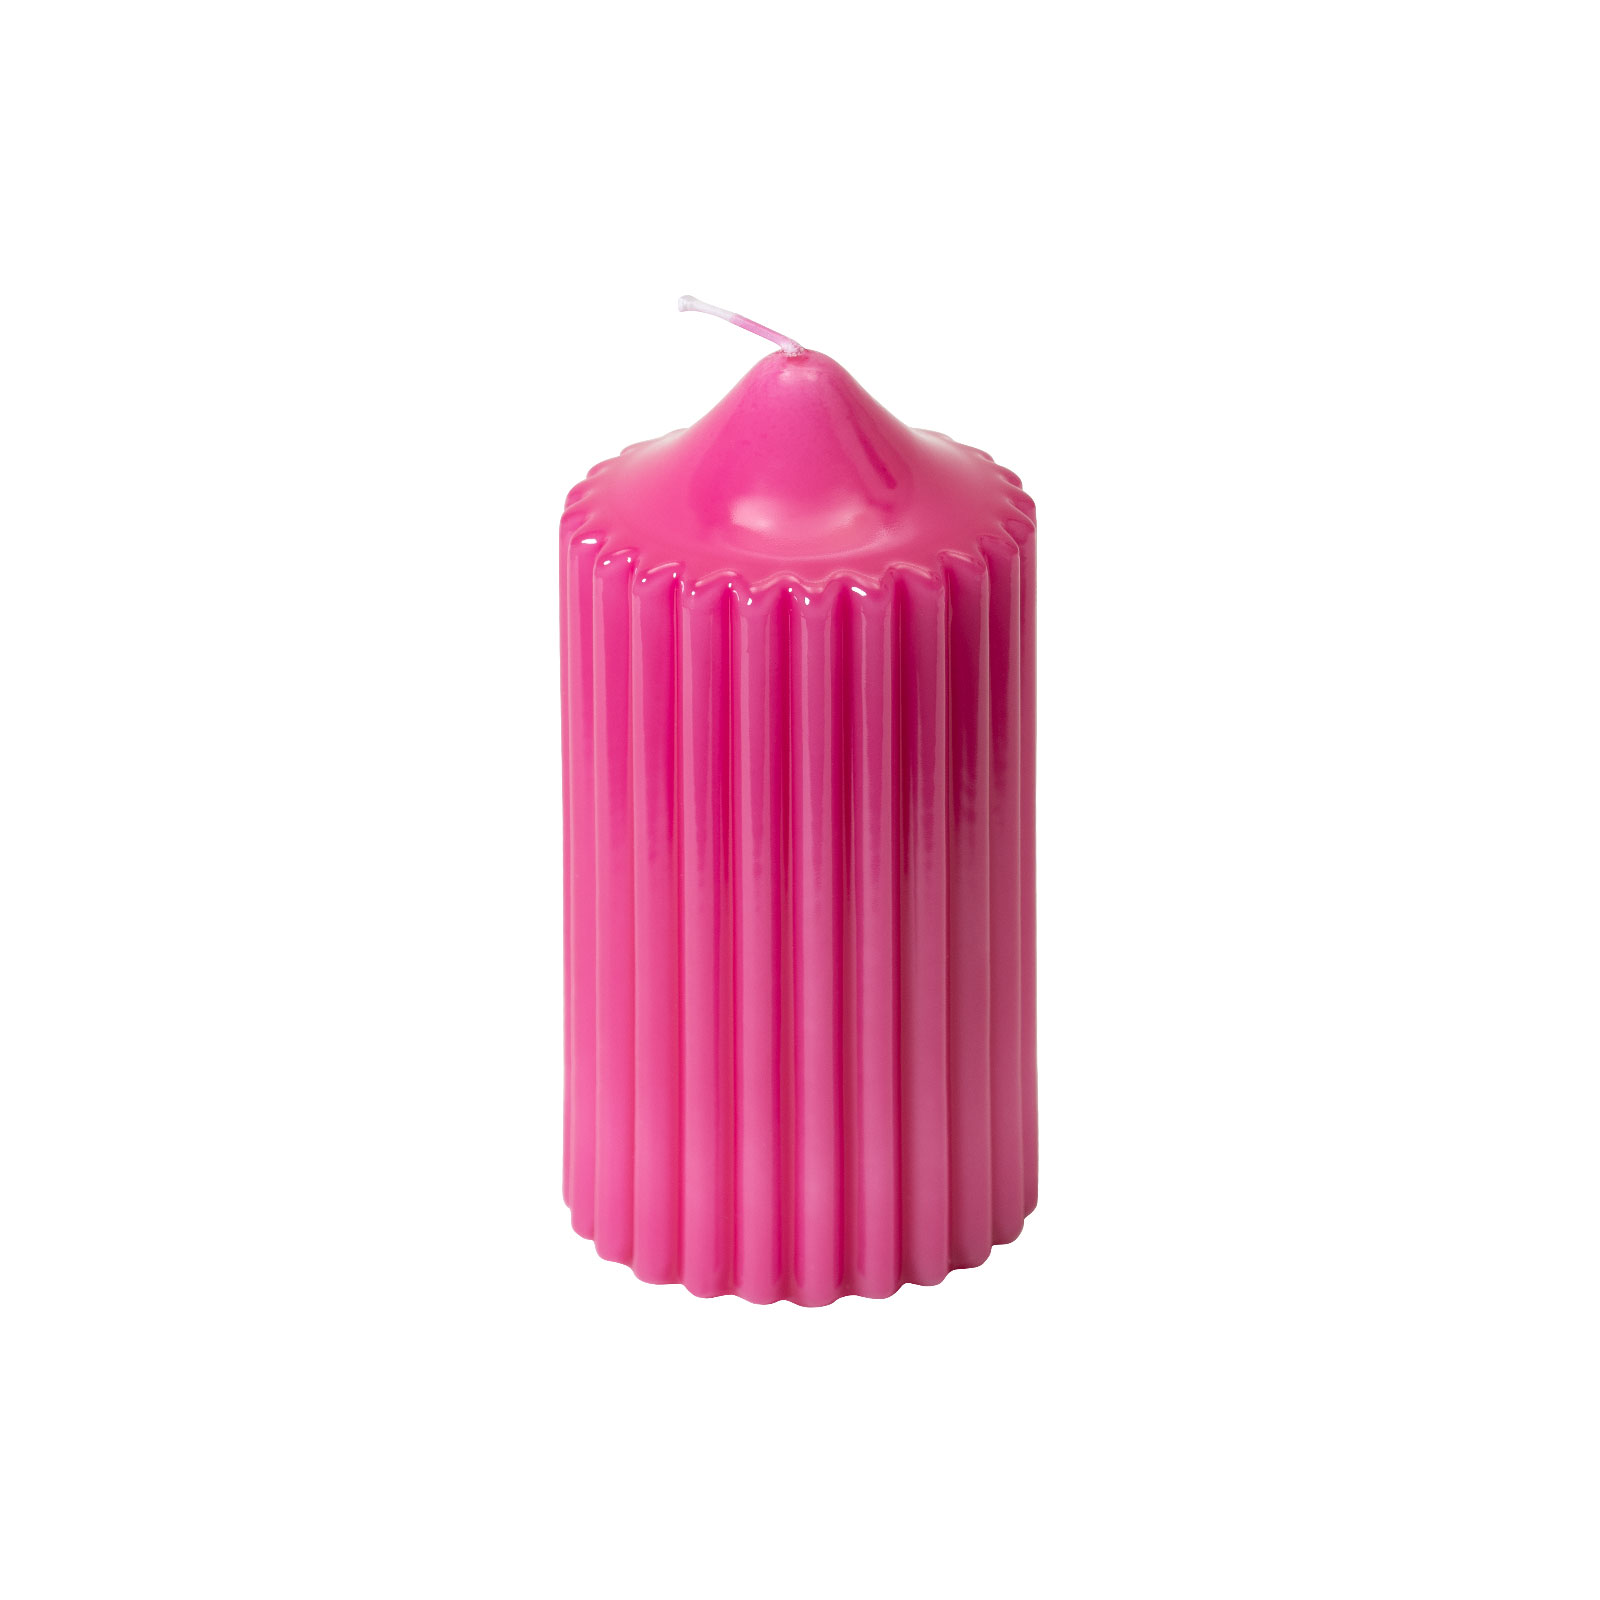 Engels Kerzen Gelackte Rillenkerze 8x15cm pink